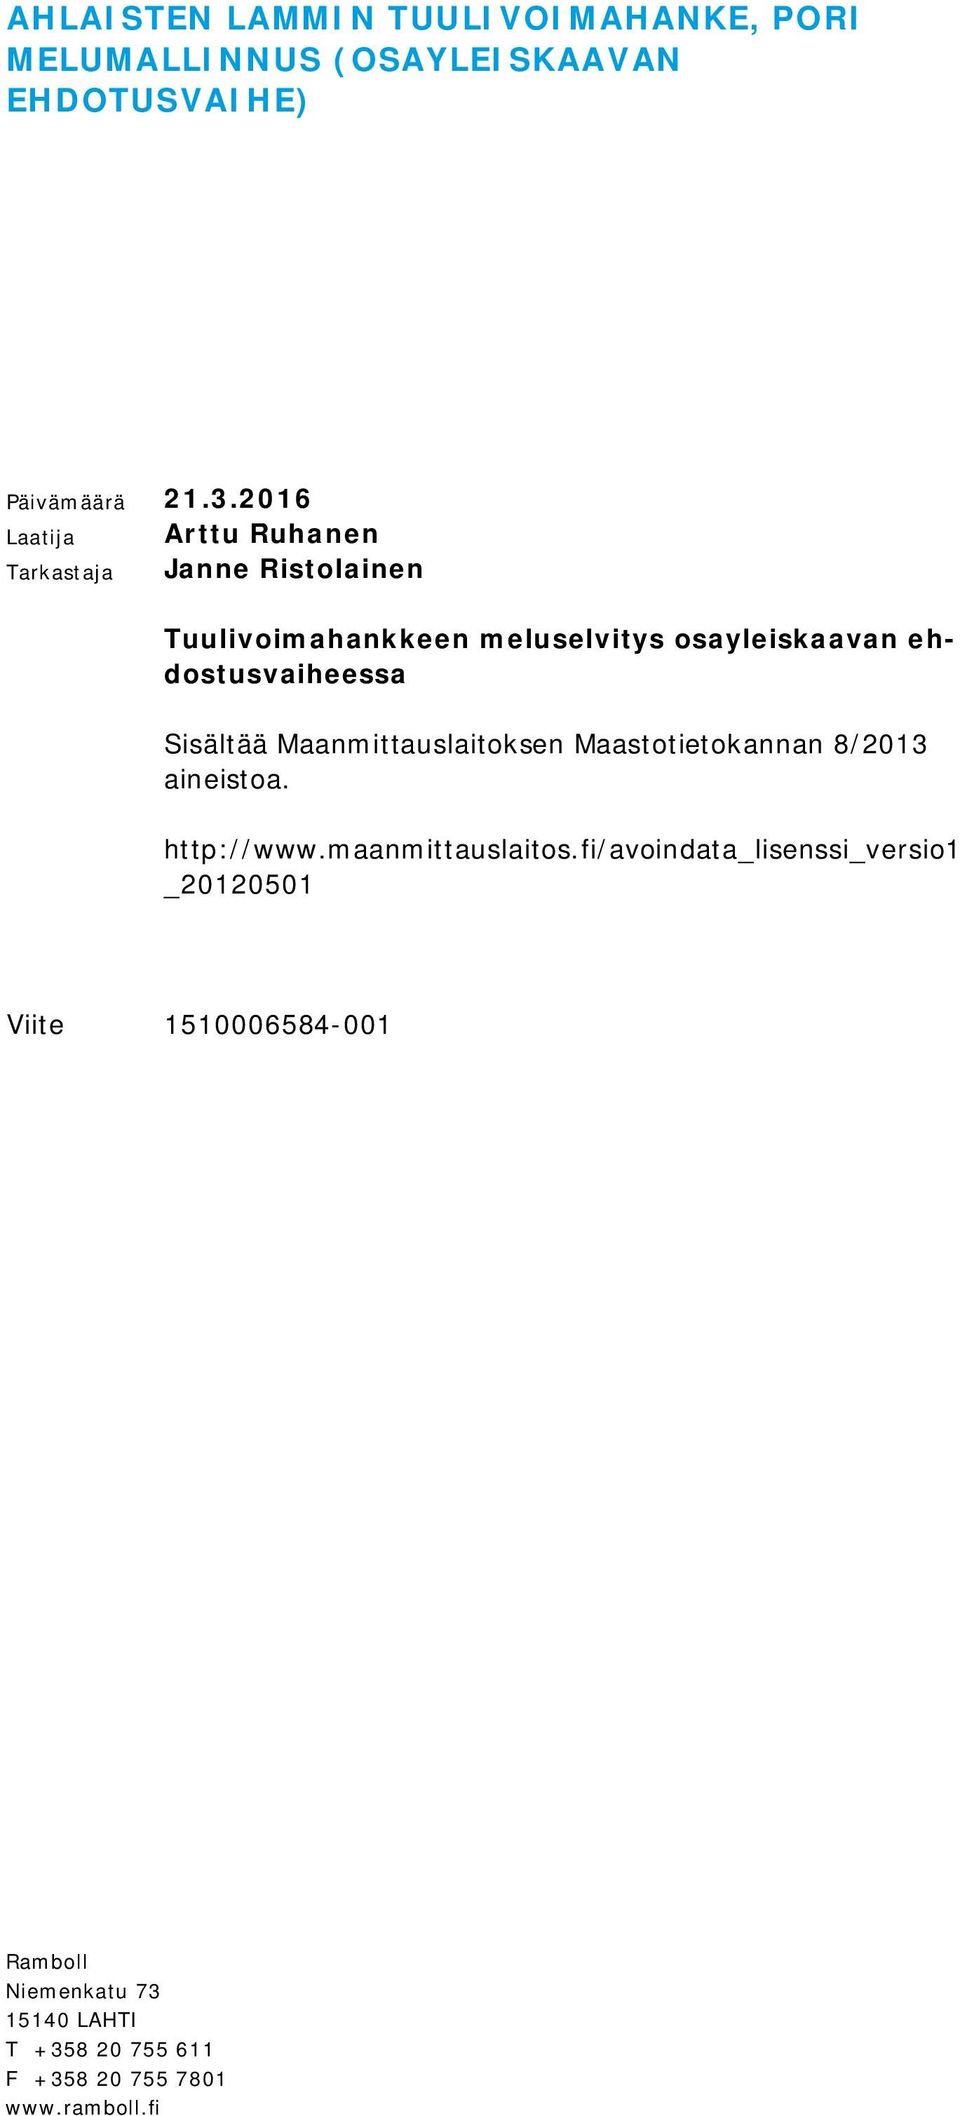 ehdostusvaiheessa Sisältää Maanmittauslaitoksen Maastotietokannan 8/2013 aineistoa. http://www.maanmittauslaitos.